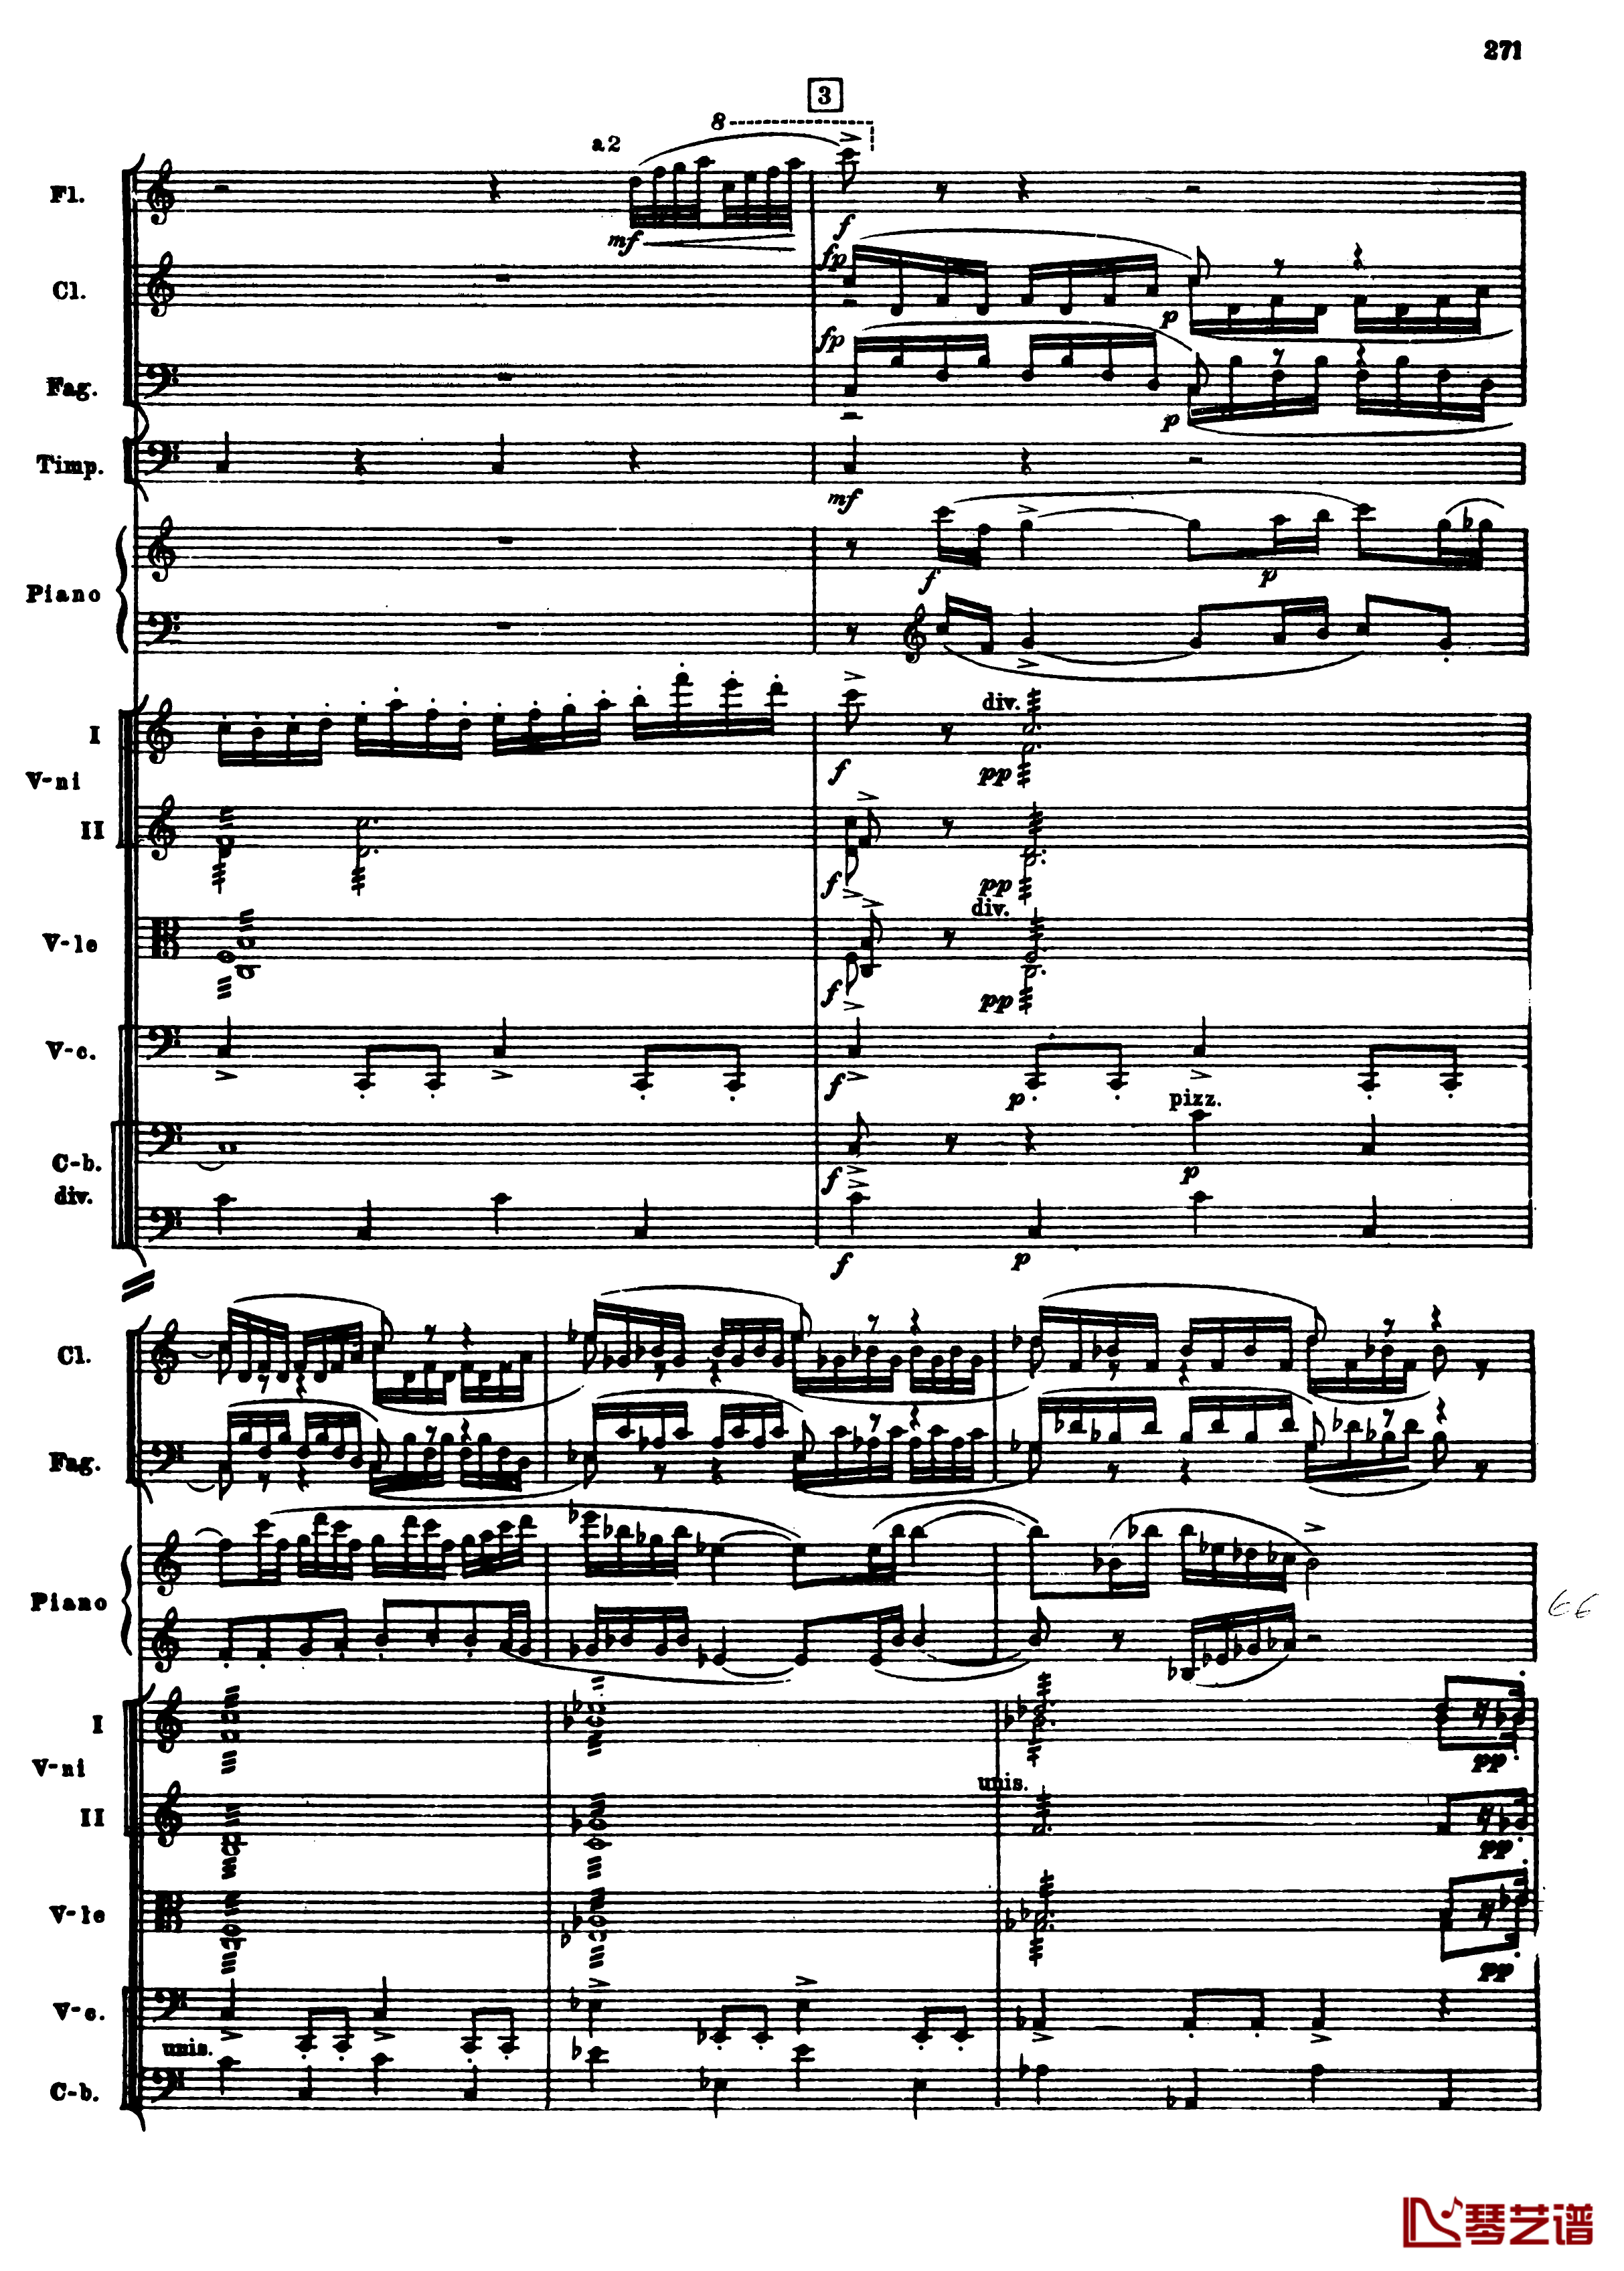 普罗科菲耶夫第三钢琴协奏曲钢琴谱-总谱-普罗科非耶夫3